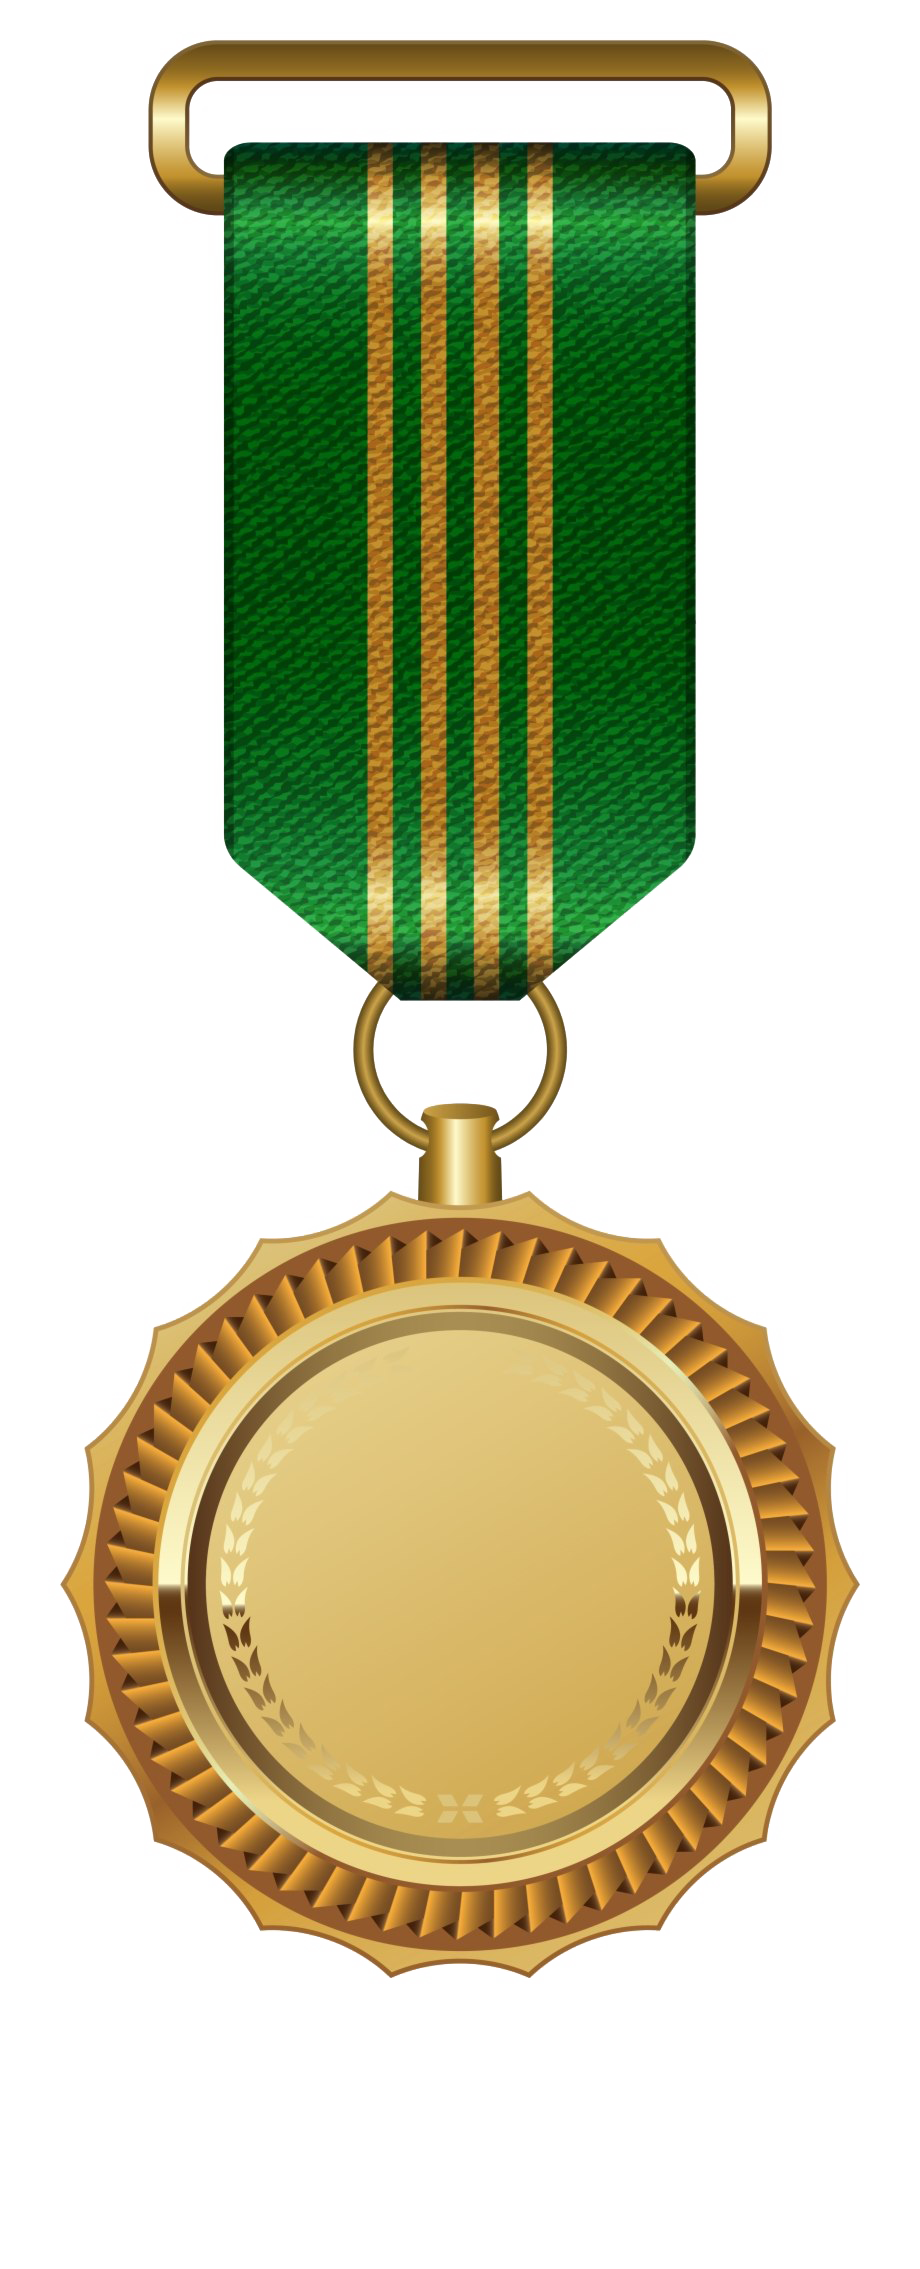 Gold Medal PNG Image in Transparent - Gold Medal Png